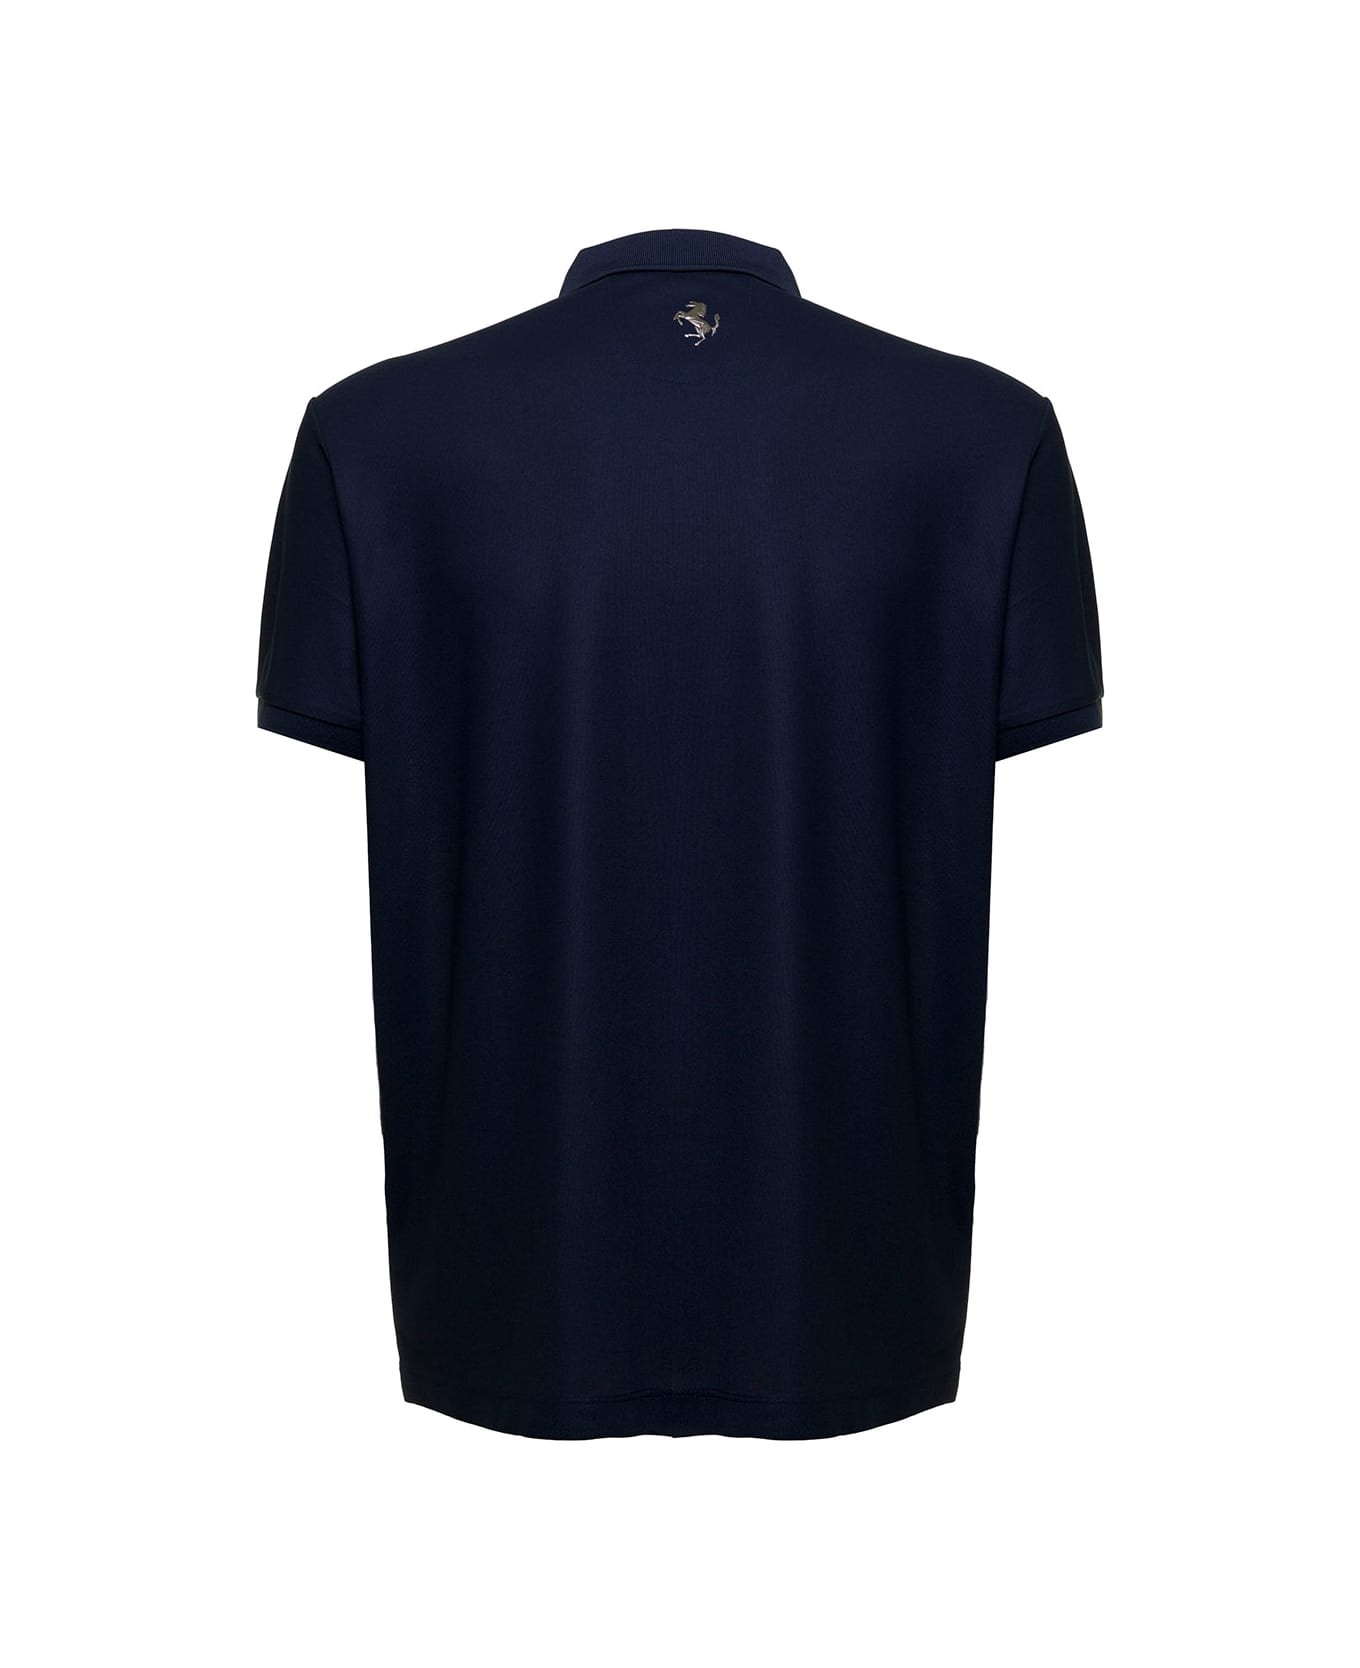 Ferrari Man's Blue Piquet Fabric Polo Shirt With Logo ポロシャツ